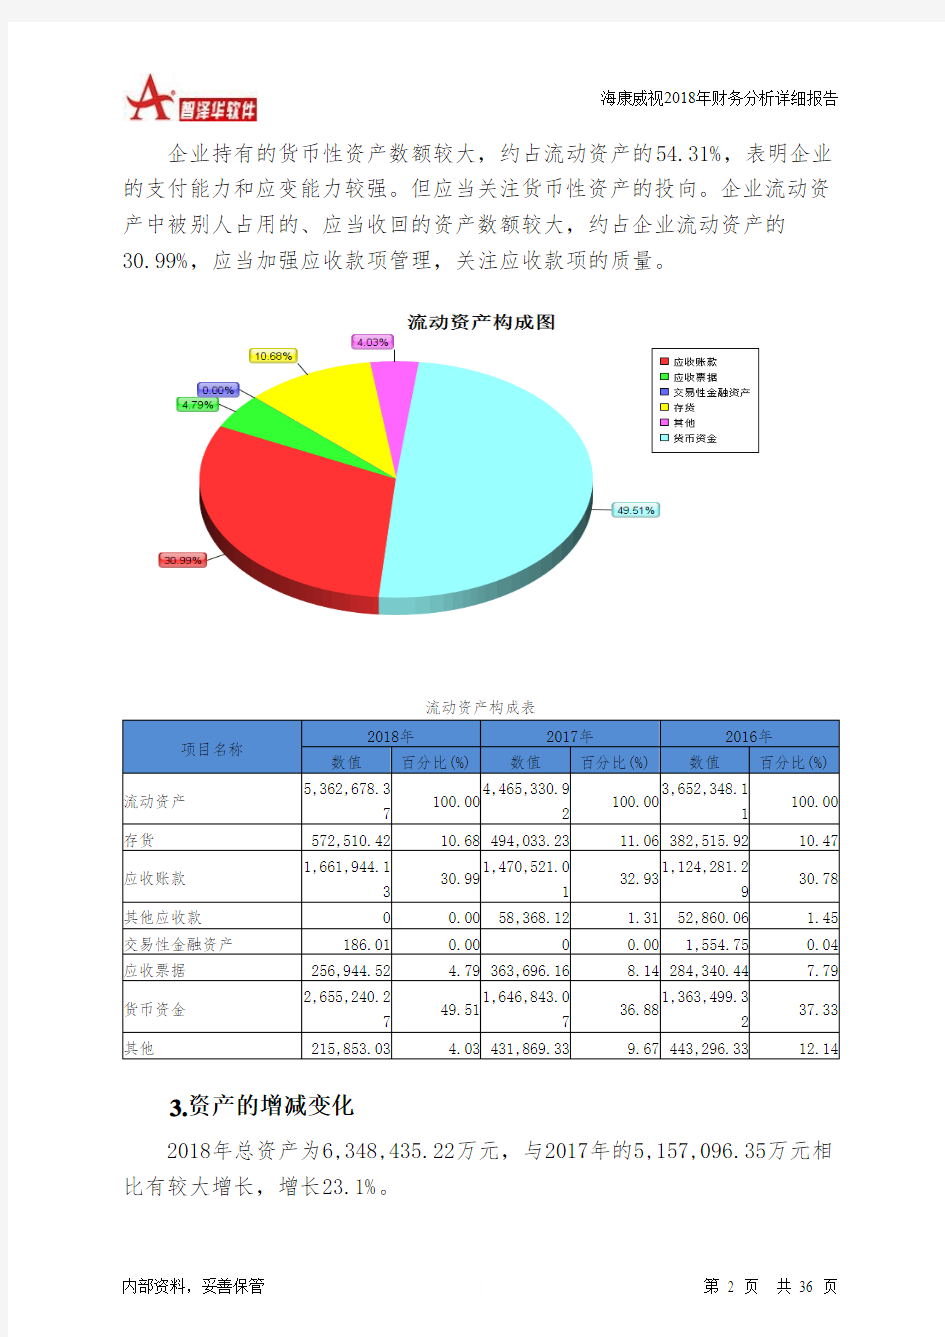 海康威视2018年财务分析详细报告-智泽华